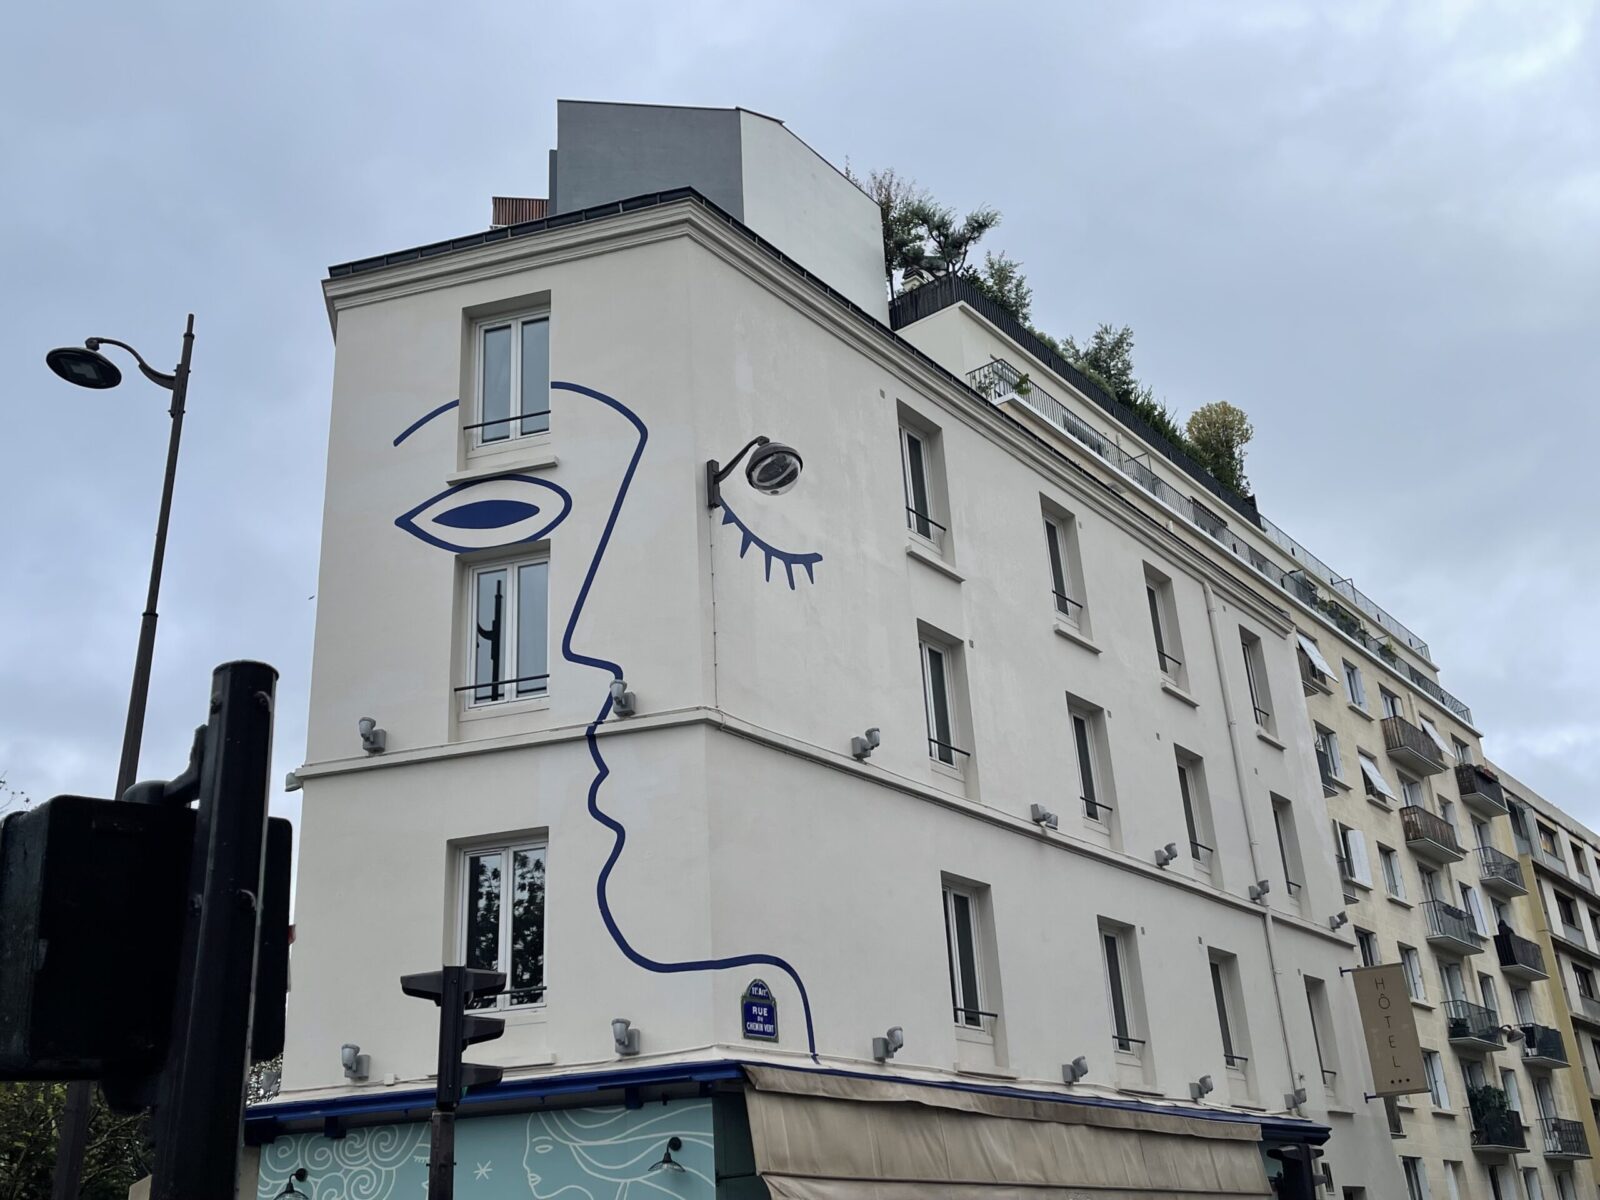 art on building in Paris